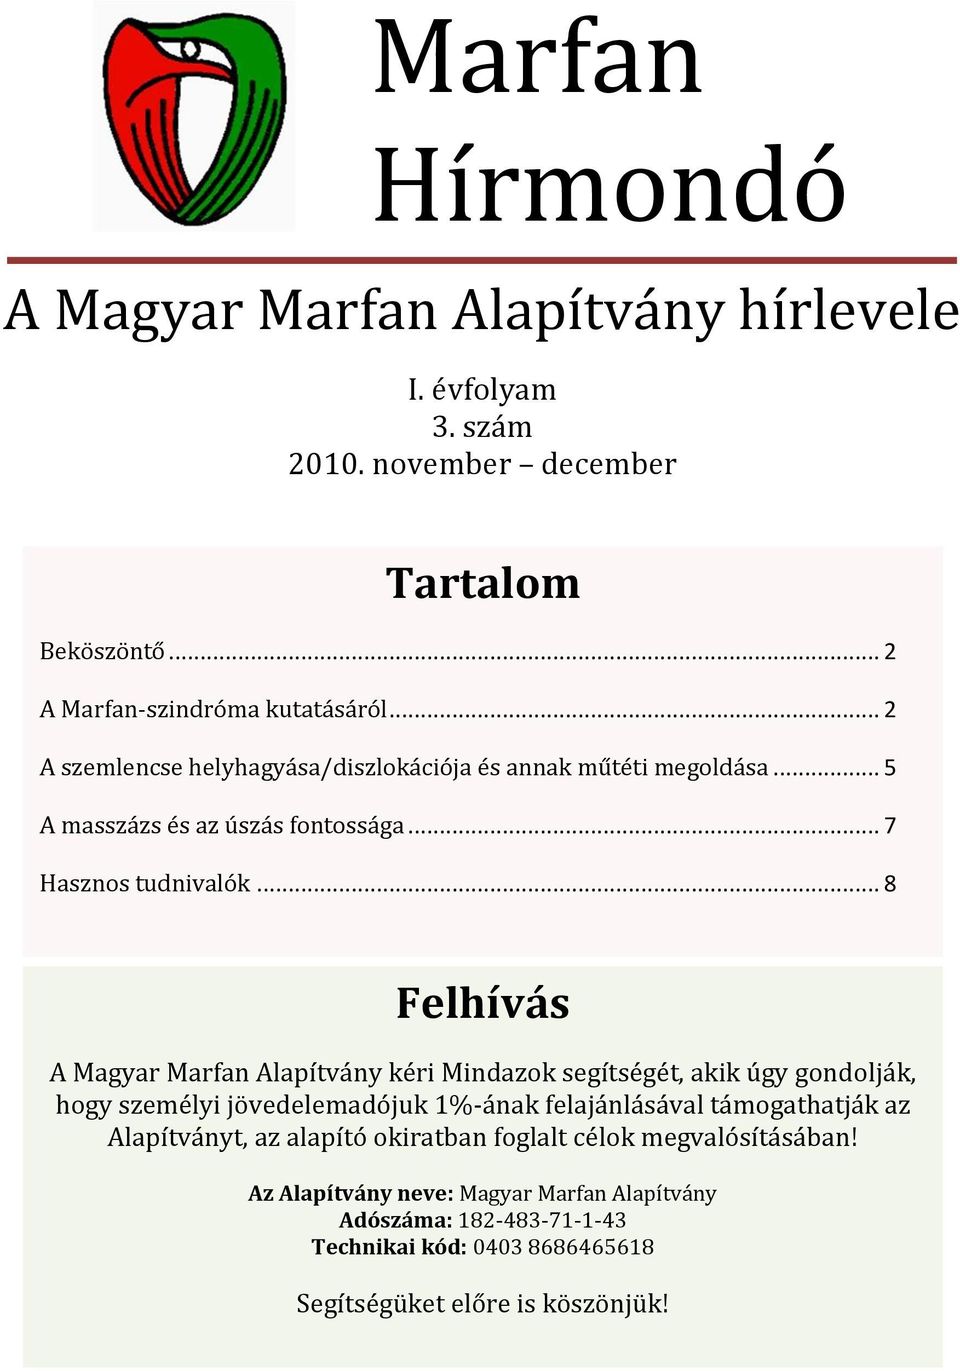 .. 8 Felhívás A Magyar Marfan Alapítvány kéri Mindazok segítségét, akik úgy gondolják, hogy személyi jövedelemadójuk 1%-ának felajánlásával támogathatják az